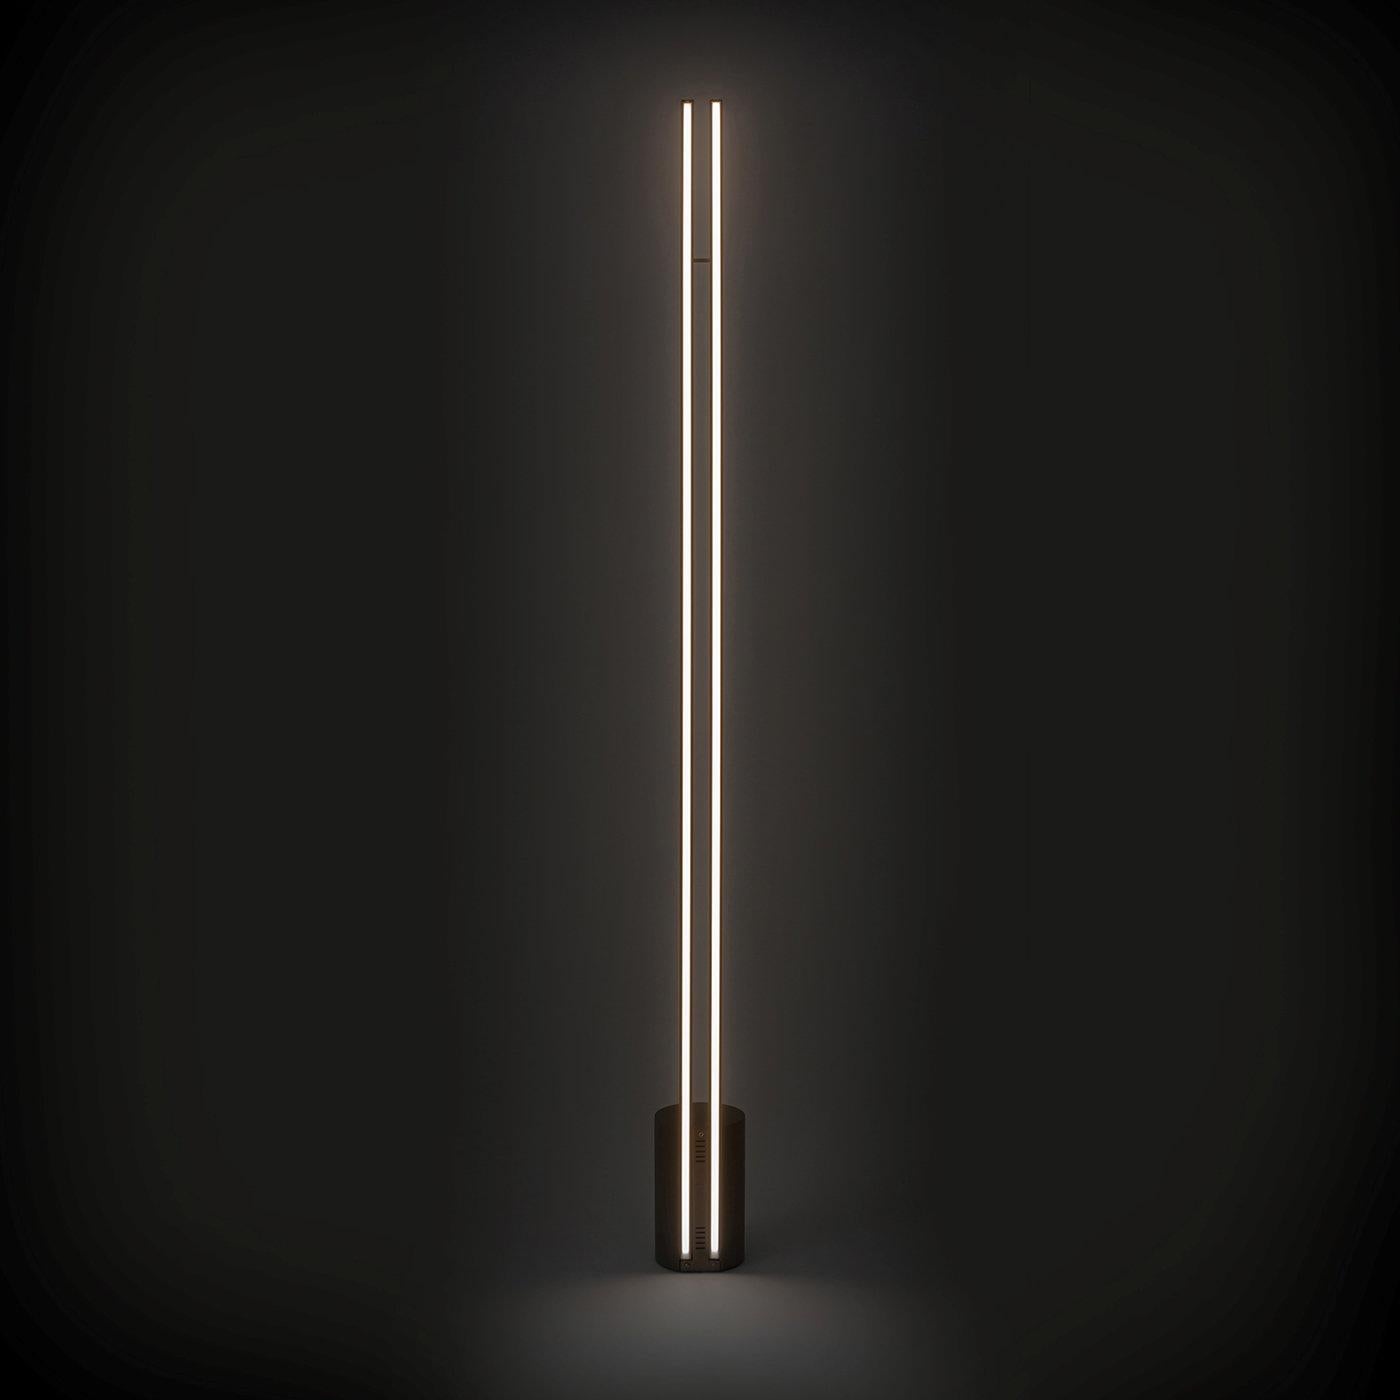 Ce superbe lampadaire est la quintessence de l'élégance contemporaine et du style minimaliste. La structure métallique en finition bronze vieilli présente une base cylindrique d'où s'élèvent deux segments parallèles aux lignes spectaculaires qui